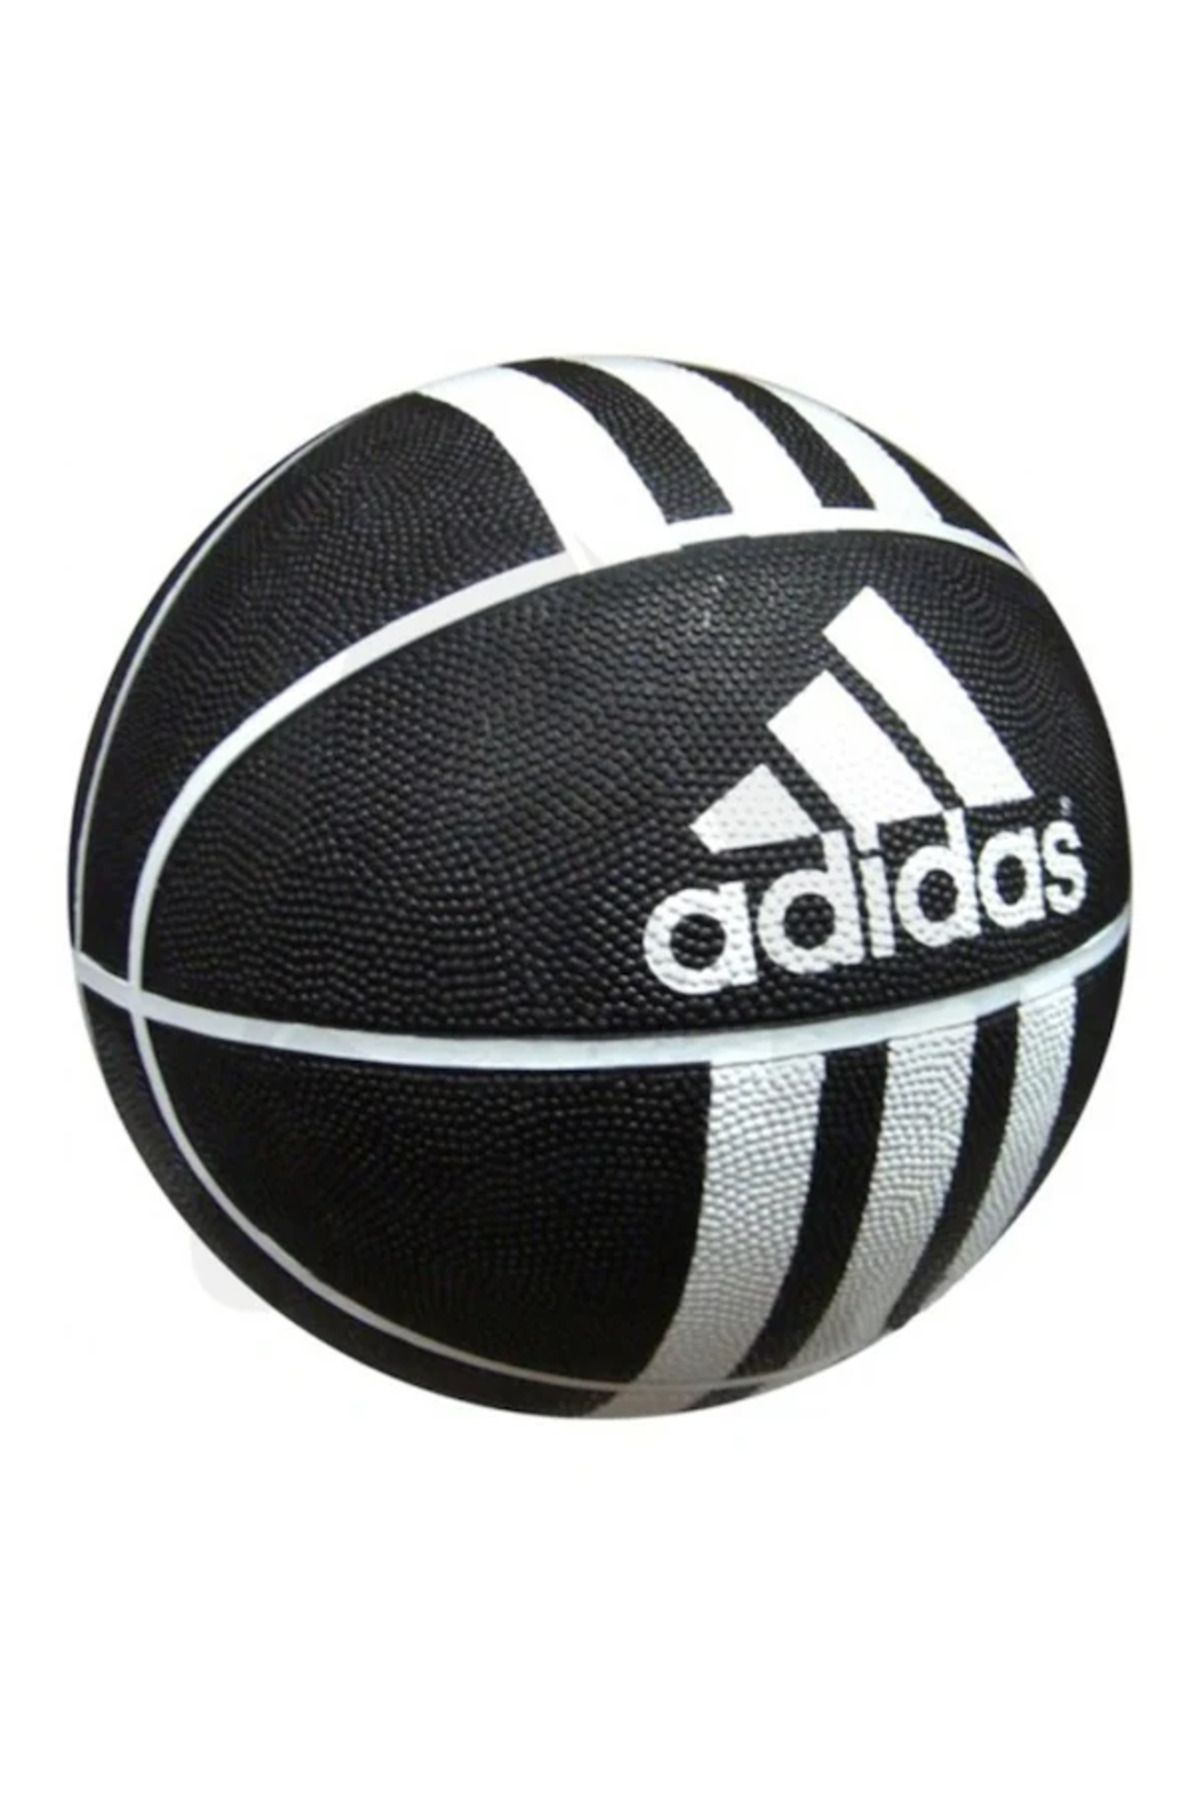 adidas 3s Rubber 279008 Siyah Beyaz Basket Topu Siyah Beyaz